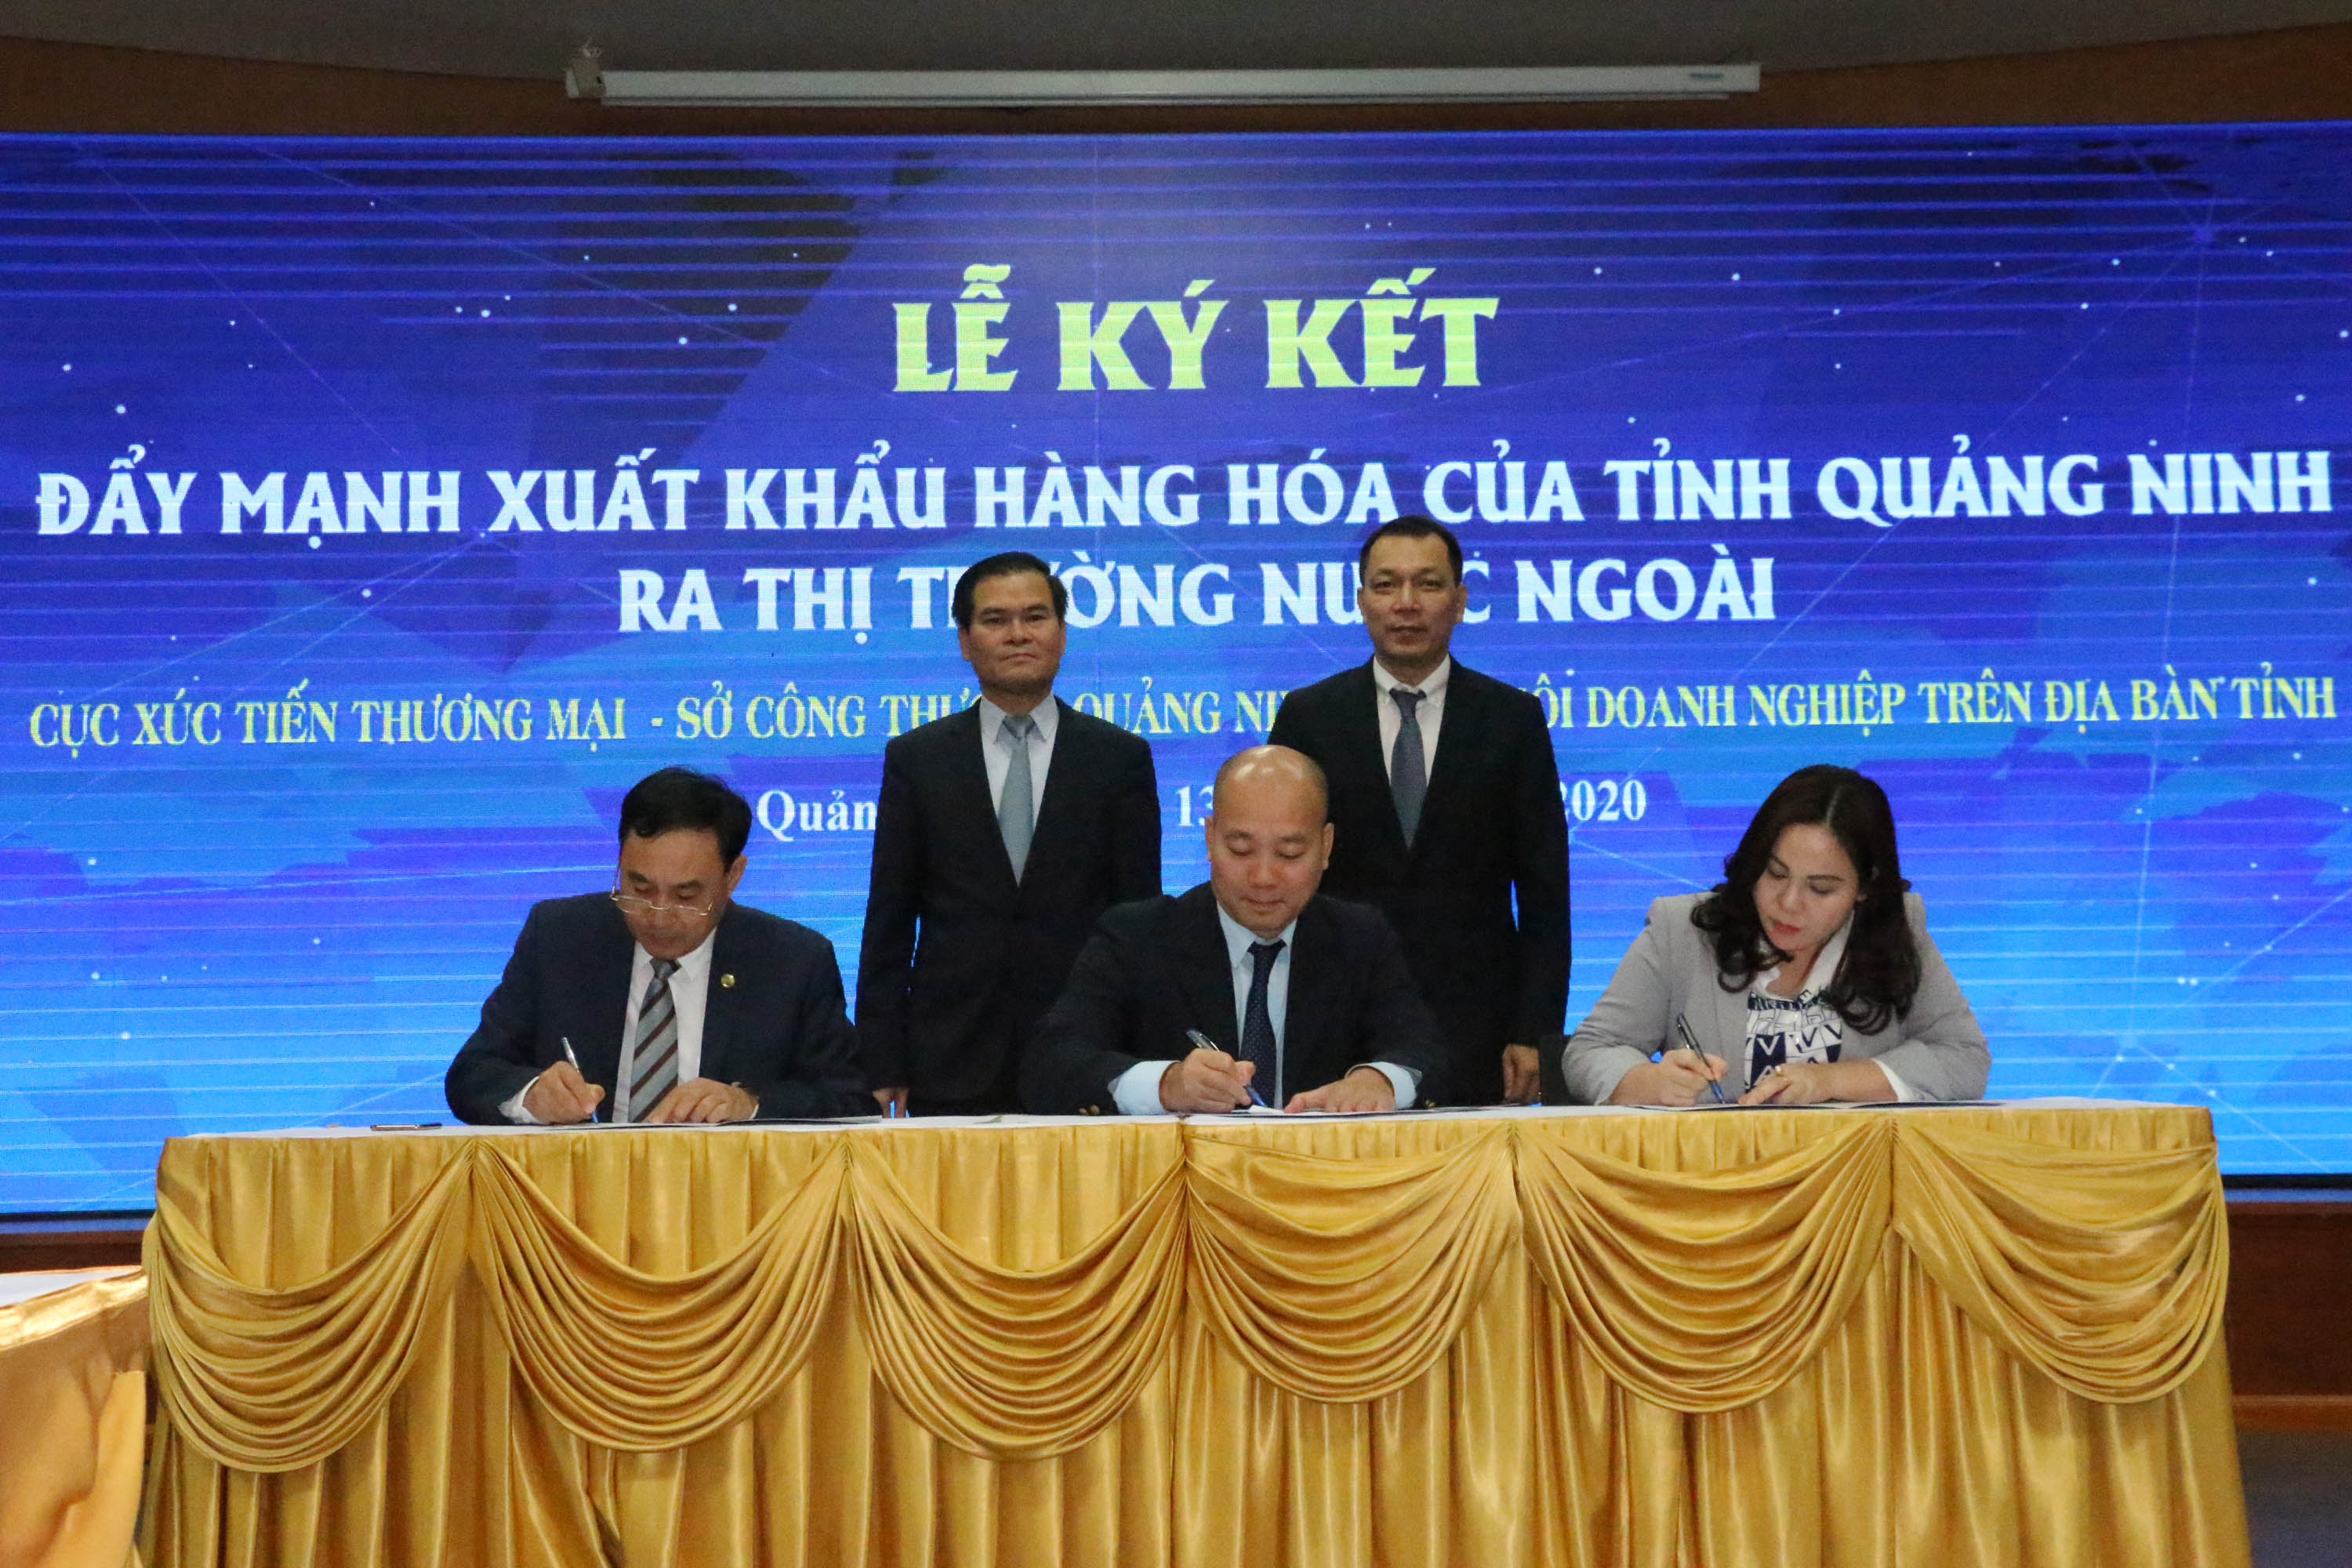 Cục Xúc tiến Thương mại, Sở Công Thương, Hiệp hội Doanh nghiệp tỉnh ký kết hỗ trợ kêu gọi đầu tư tỉnh Quảng Ninh, đặc biệt tại các KCN, KKT.